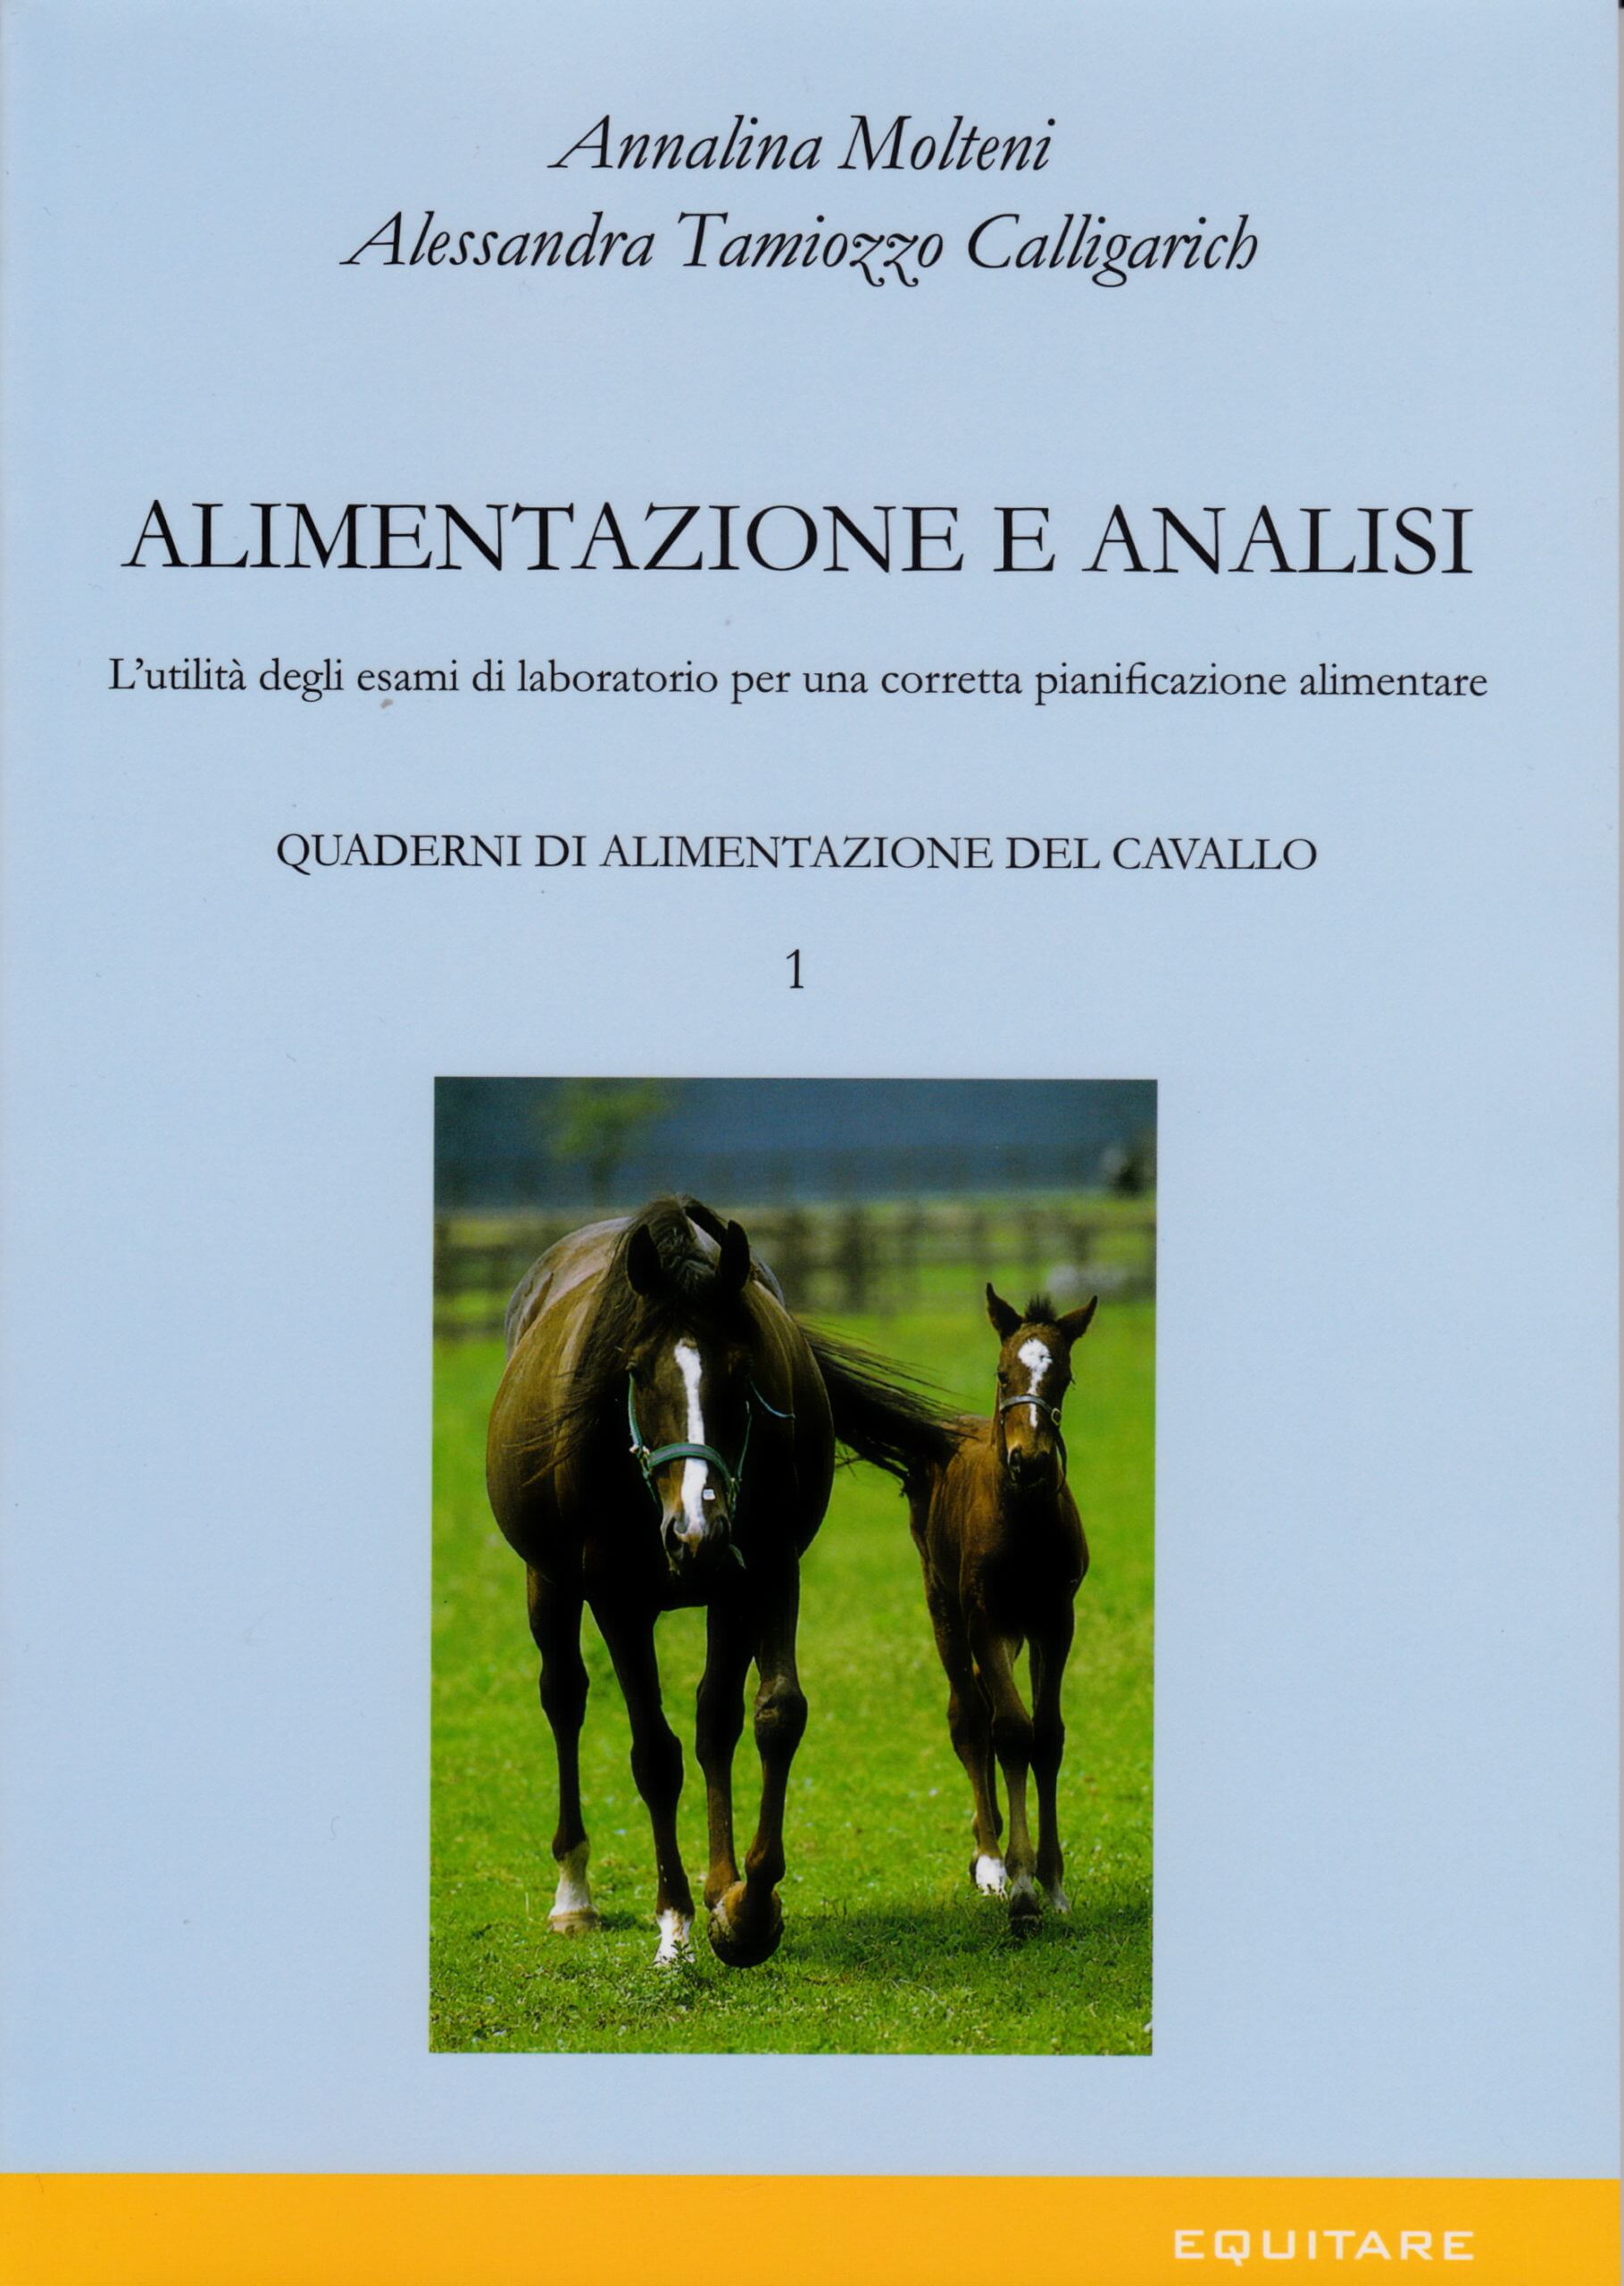 ALIMENTAZIONE E ANALISI - Annalina Molteni, Alessandra Tamiozzo Calligarich